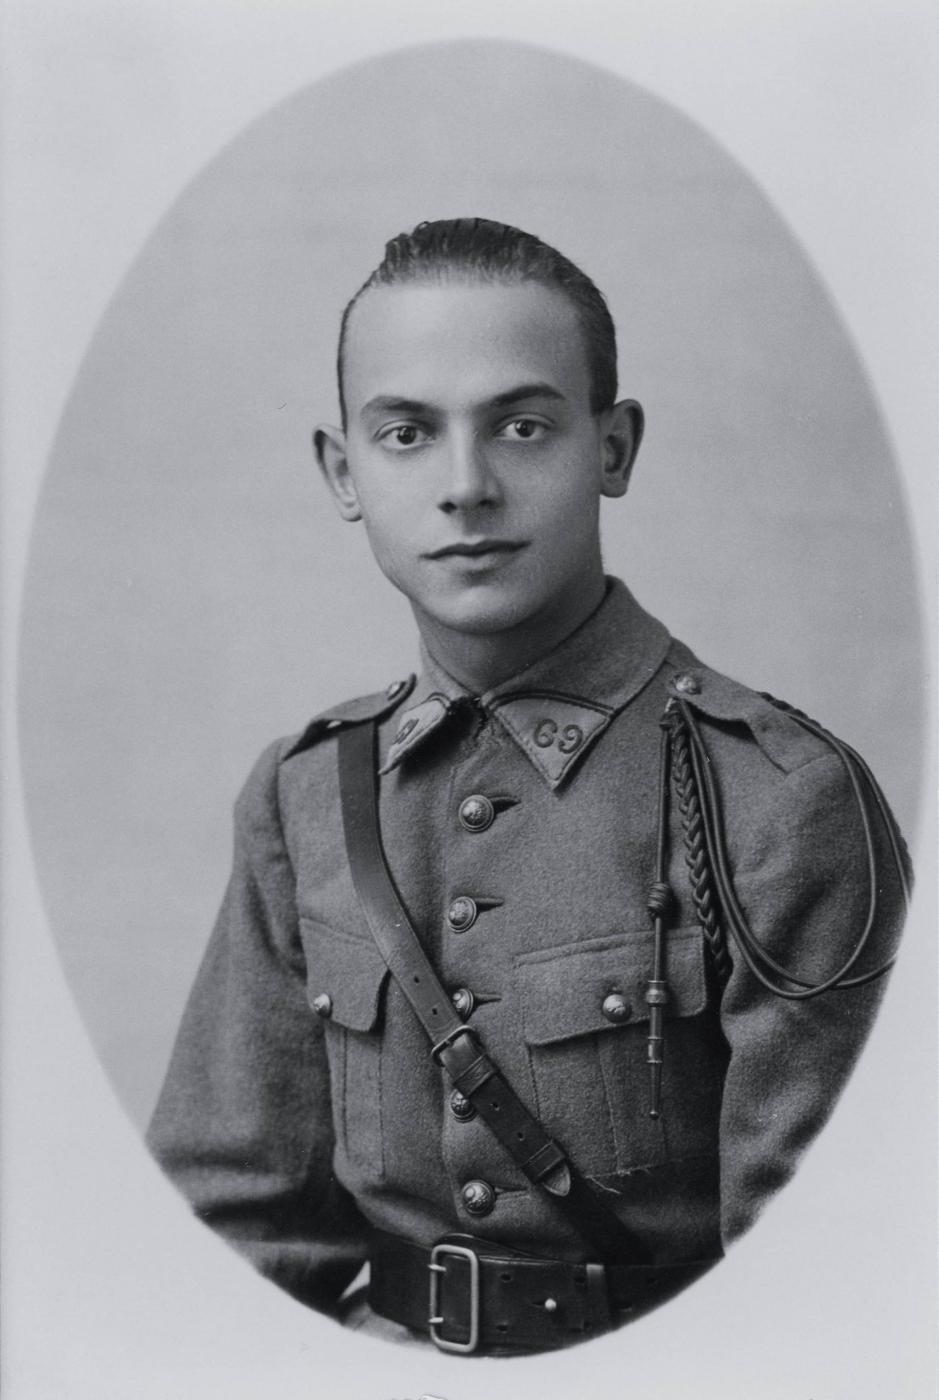 Ligne Maginot - 69° Régiment de Mitrailleurs d'Infanterie de Forteresse (69° RMIF) - Portrait de André Dirr
Il sera tué le 18 juion 1940 sur le canal de la Marne au Rhin lors du repli de son unité